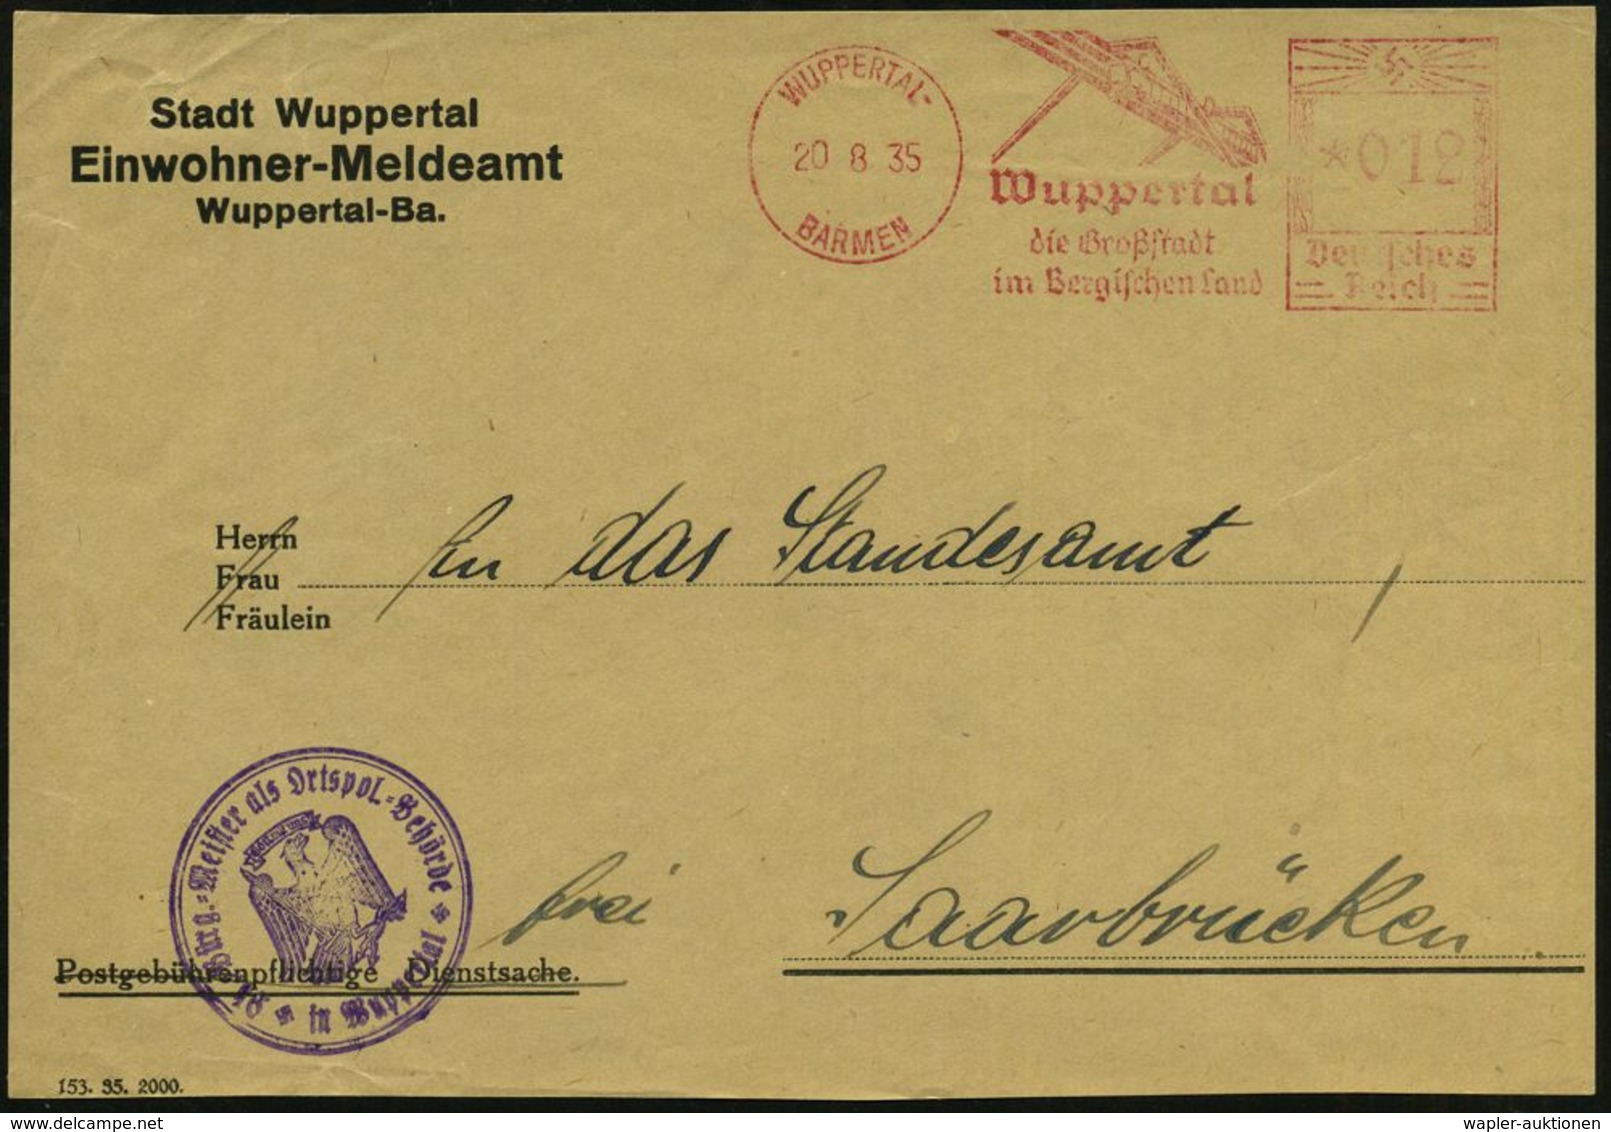 SCHWEBEBAHN WUPPERTAL : WUPPERTAL-/ BARMEN/ Die Großstadt/ Im Bergischen Land 1935 (20.8.) Dekorat. AFS = Schwebebahn Au - Trains